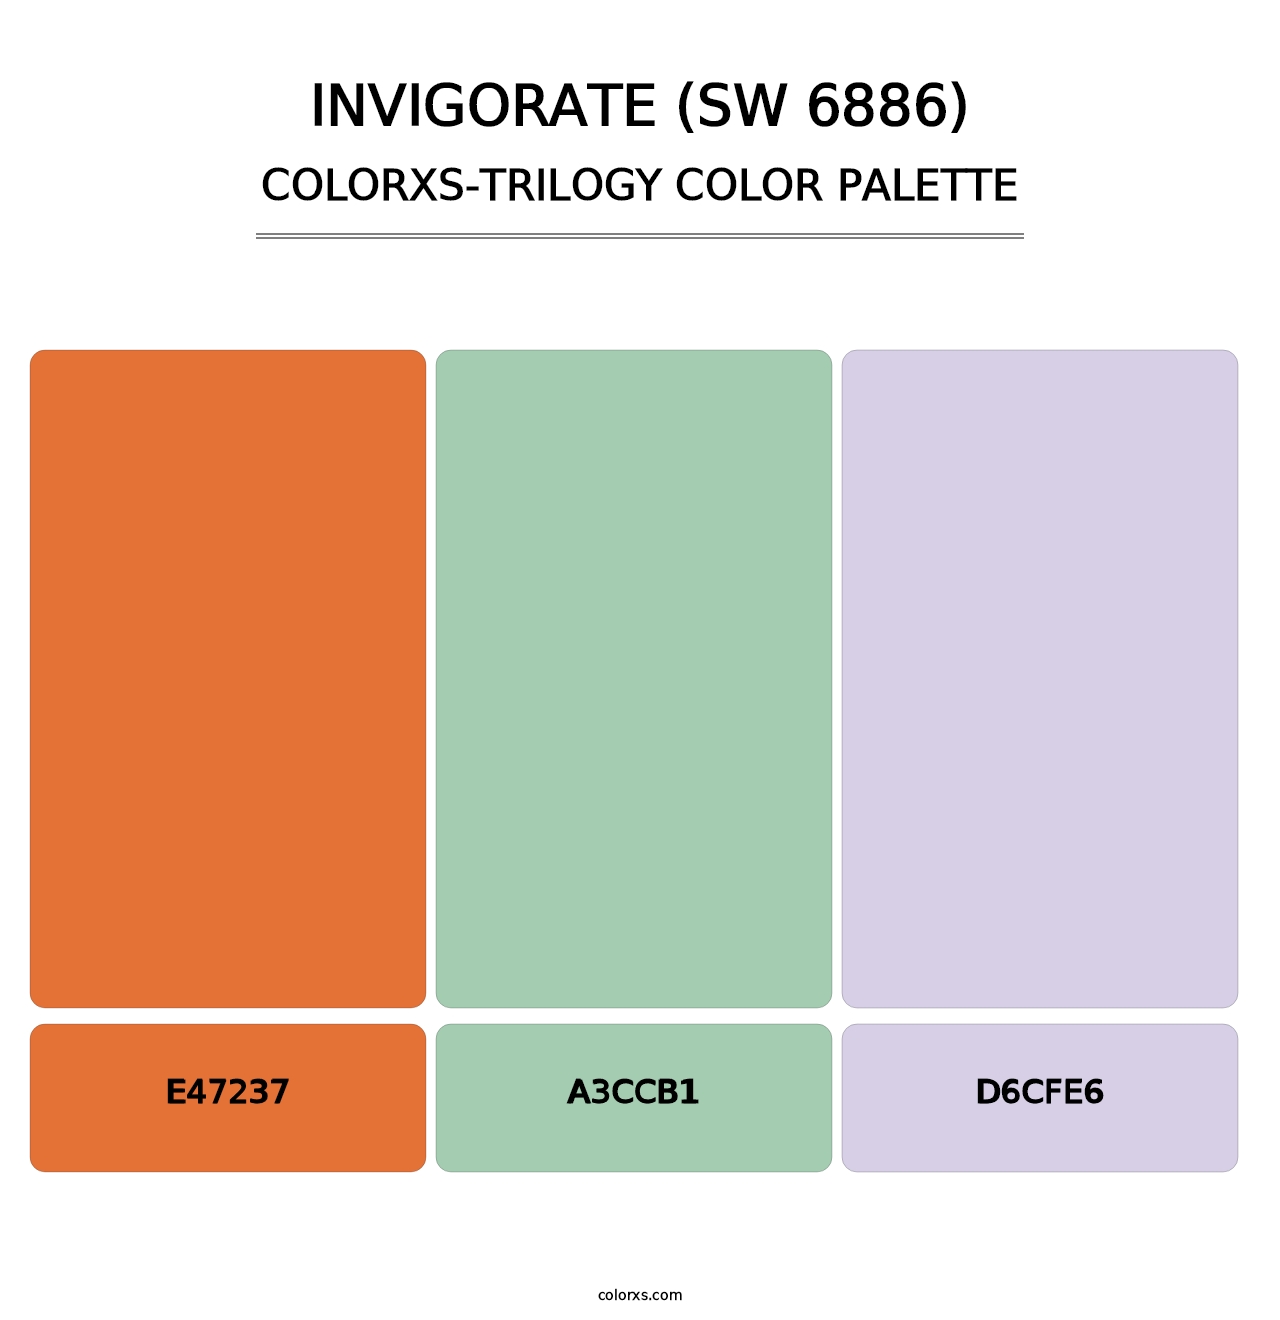 Invigorate (SW 6886) - Colorxs Trilogy Palette